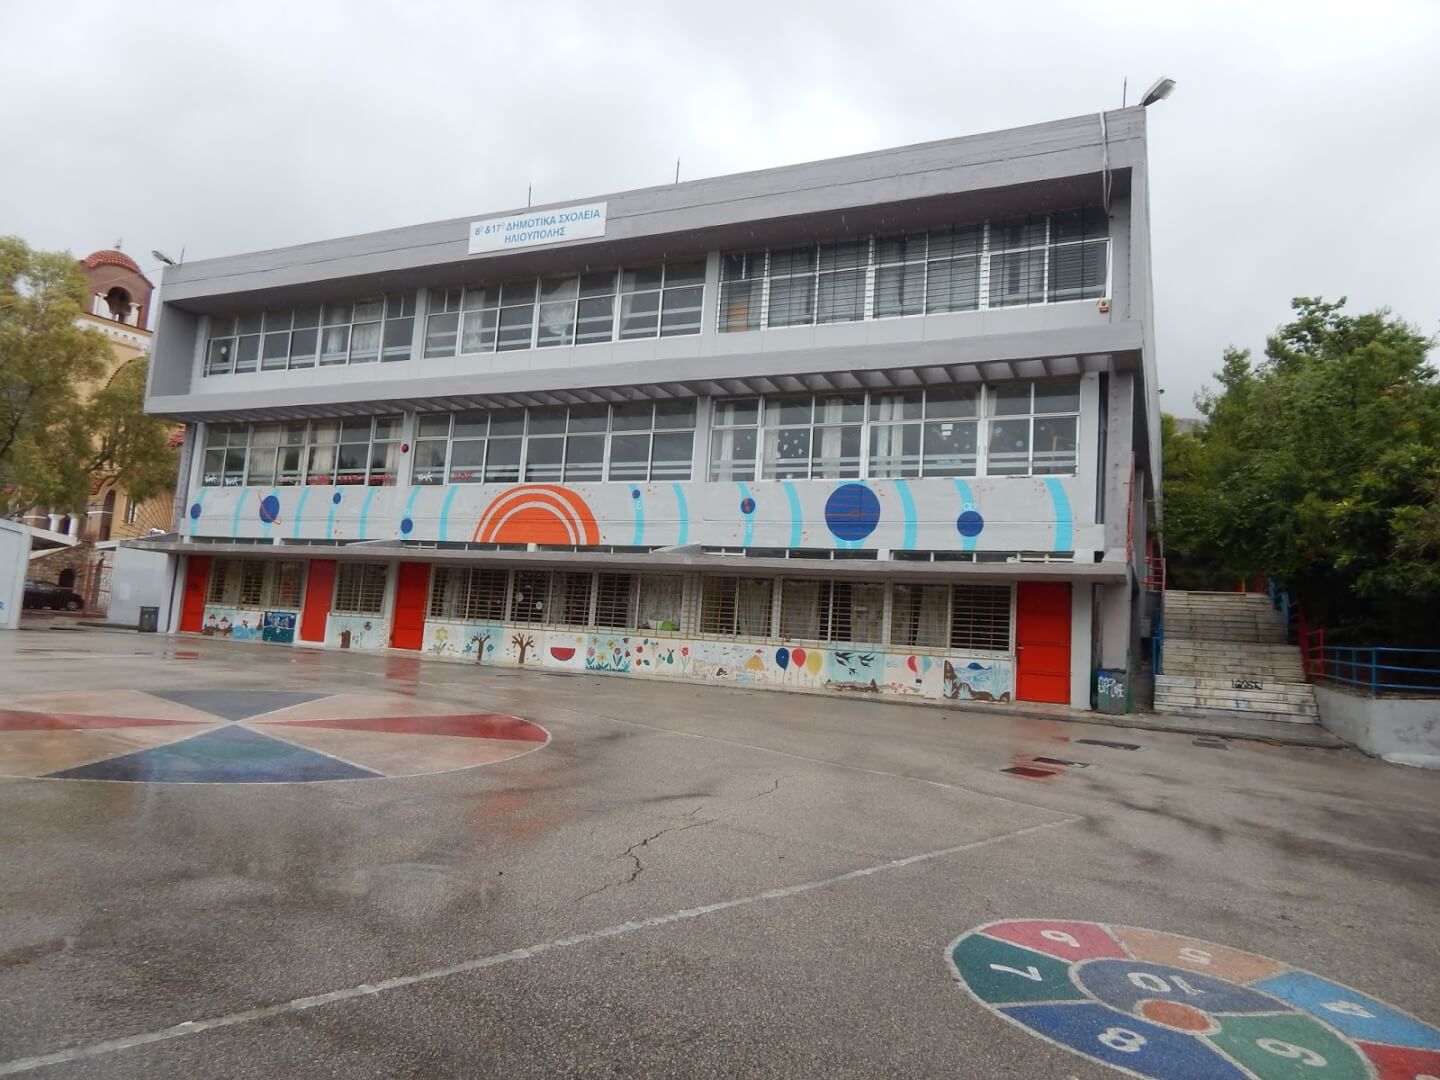 Ηλιούπολη: 2,5 Εκατομμύρια Ευρώ Για Την Αναβάθμιση Των Σχολείων Από Το Πρόγραμμα «Αντώνης Τρίτσης»